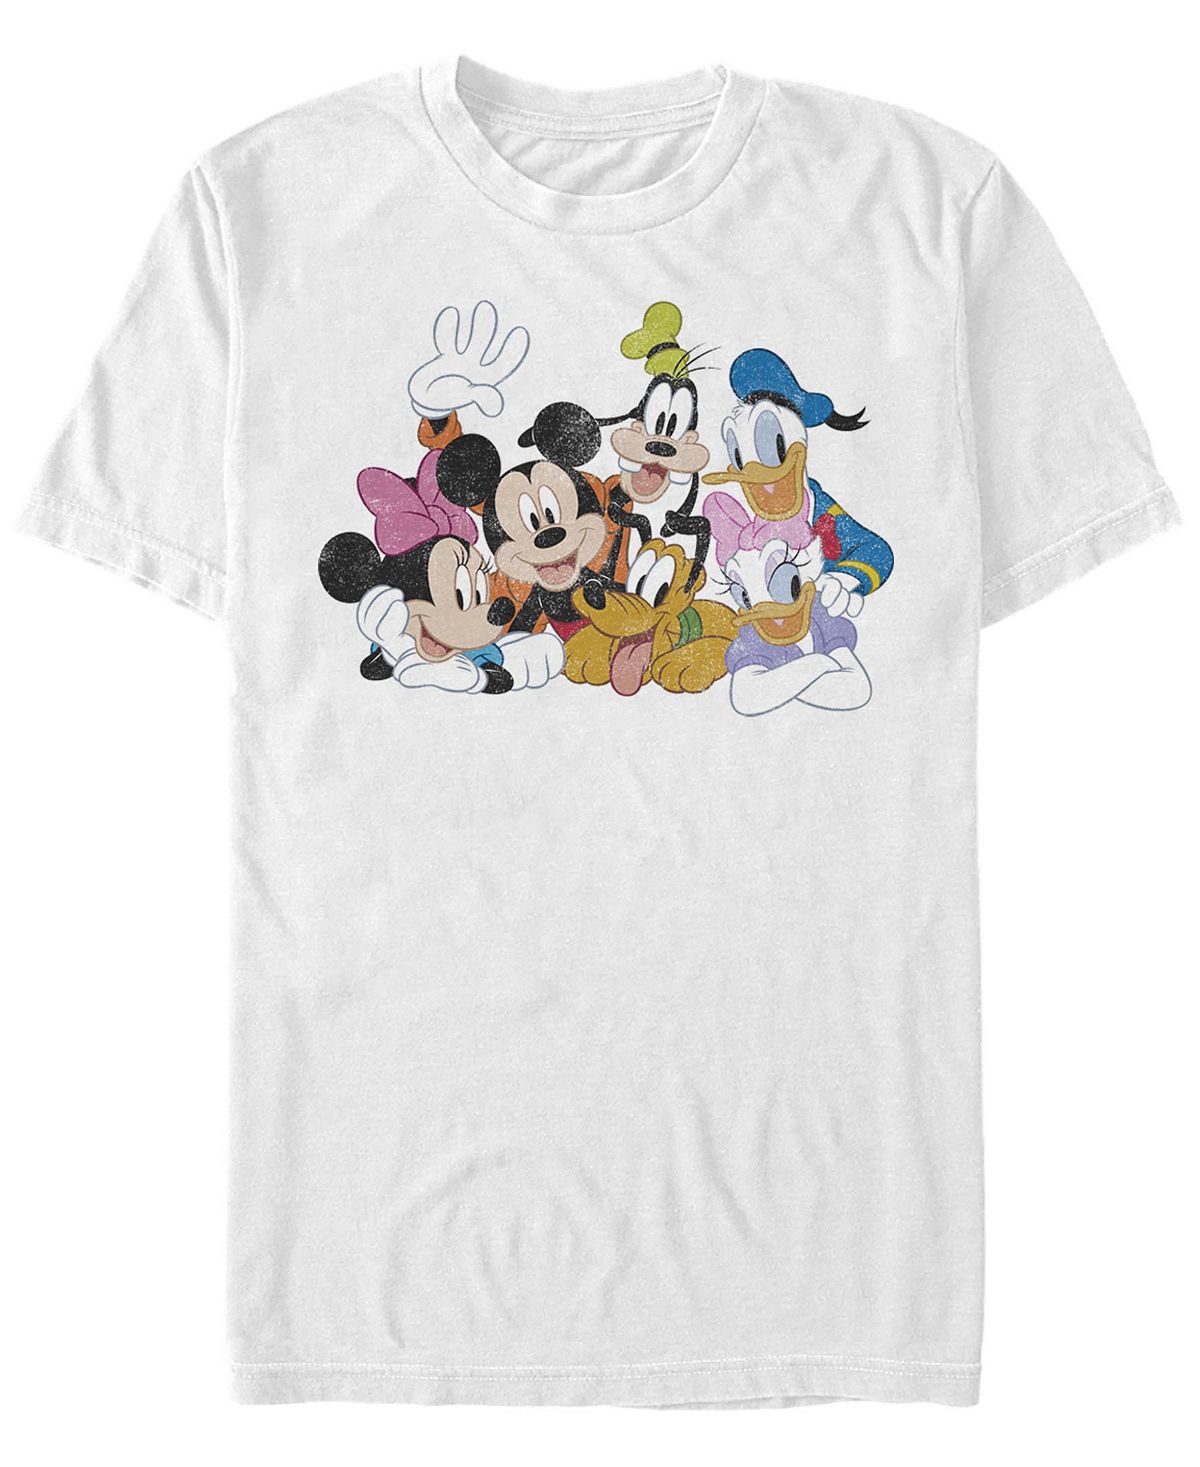 Мужская футболка Mickey Group с короткими рукавами и круглым вырезом Fifth Sun мужская футболка с длинными рукавами mickey classic vampire mickey fifth sun